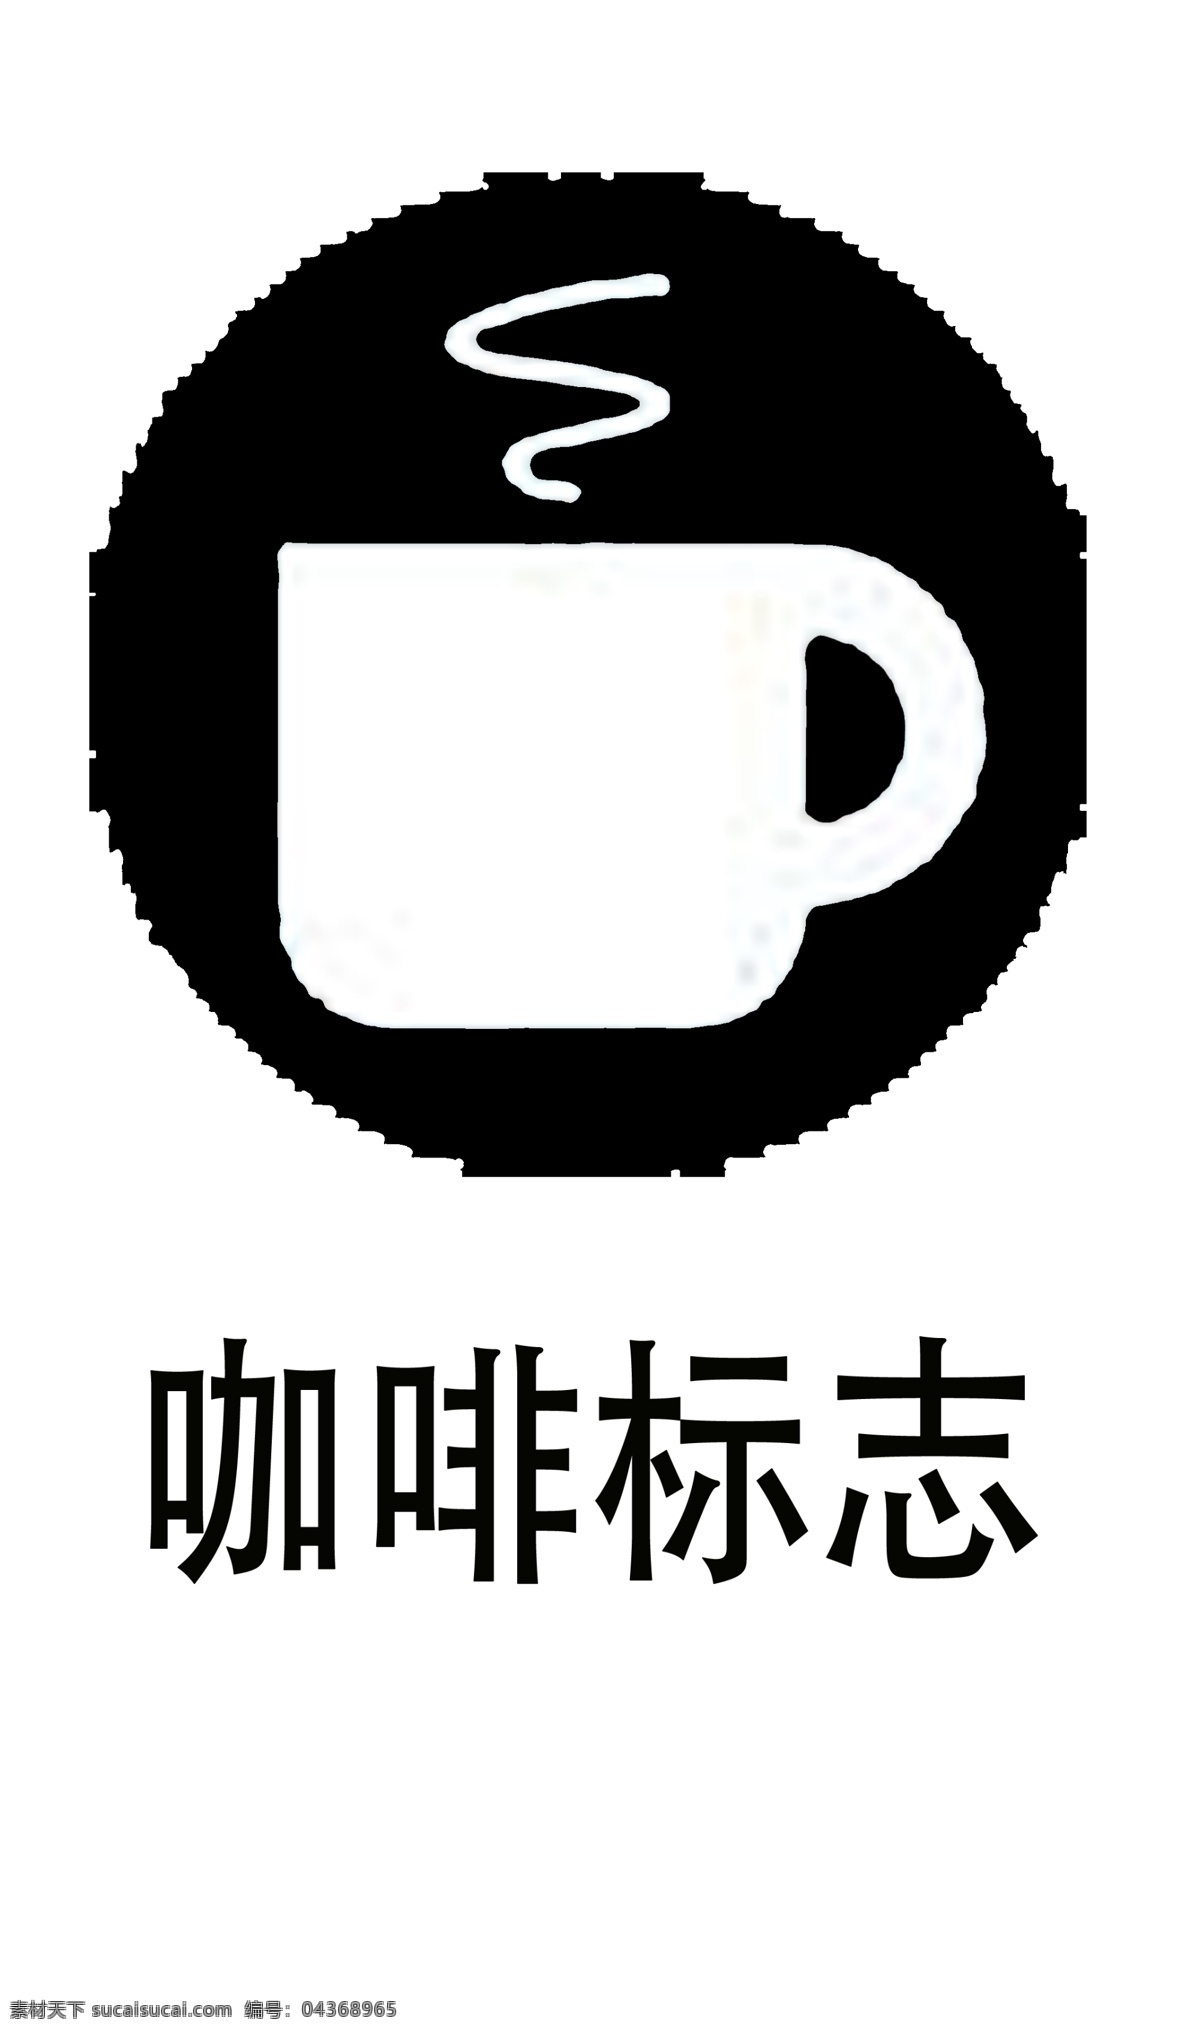 咖啡 标志 图标素材 图标 简单 黑色 png格式 清楚明了 可用于装饰 可以 填充 颜色 免抠